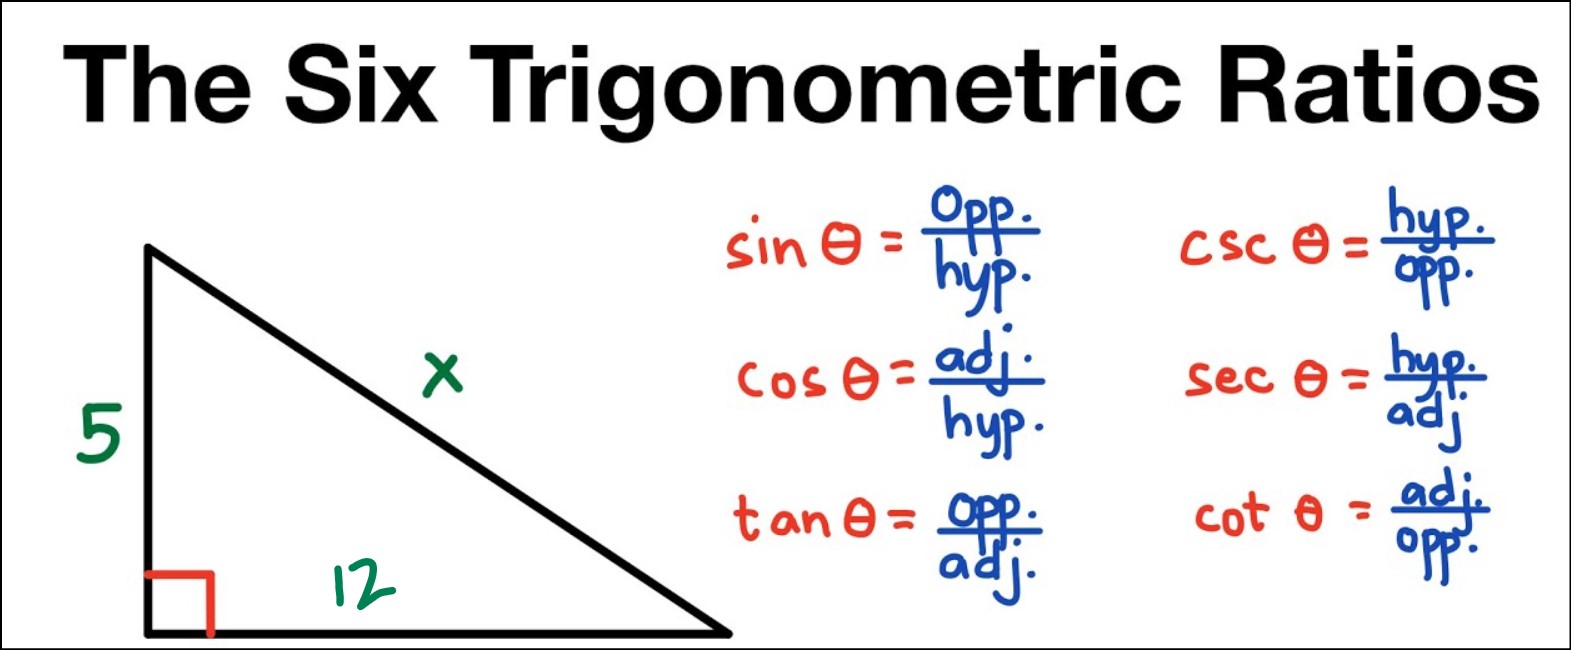 Trigonometric Ratios in Right Triangles